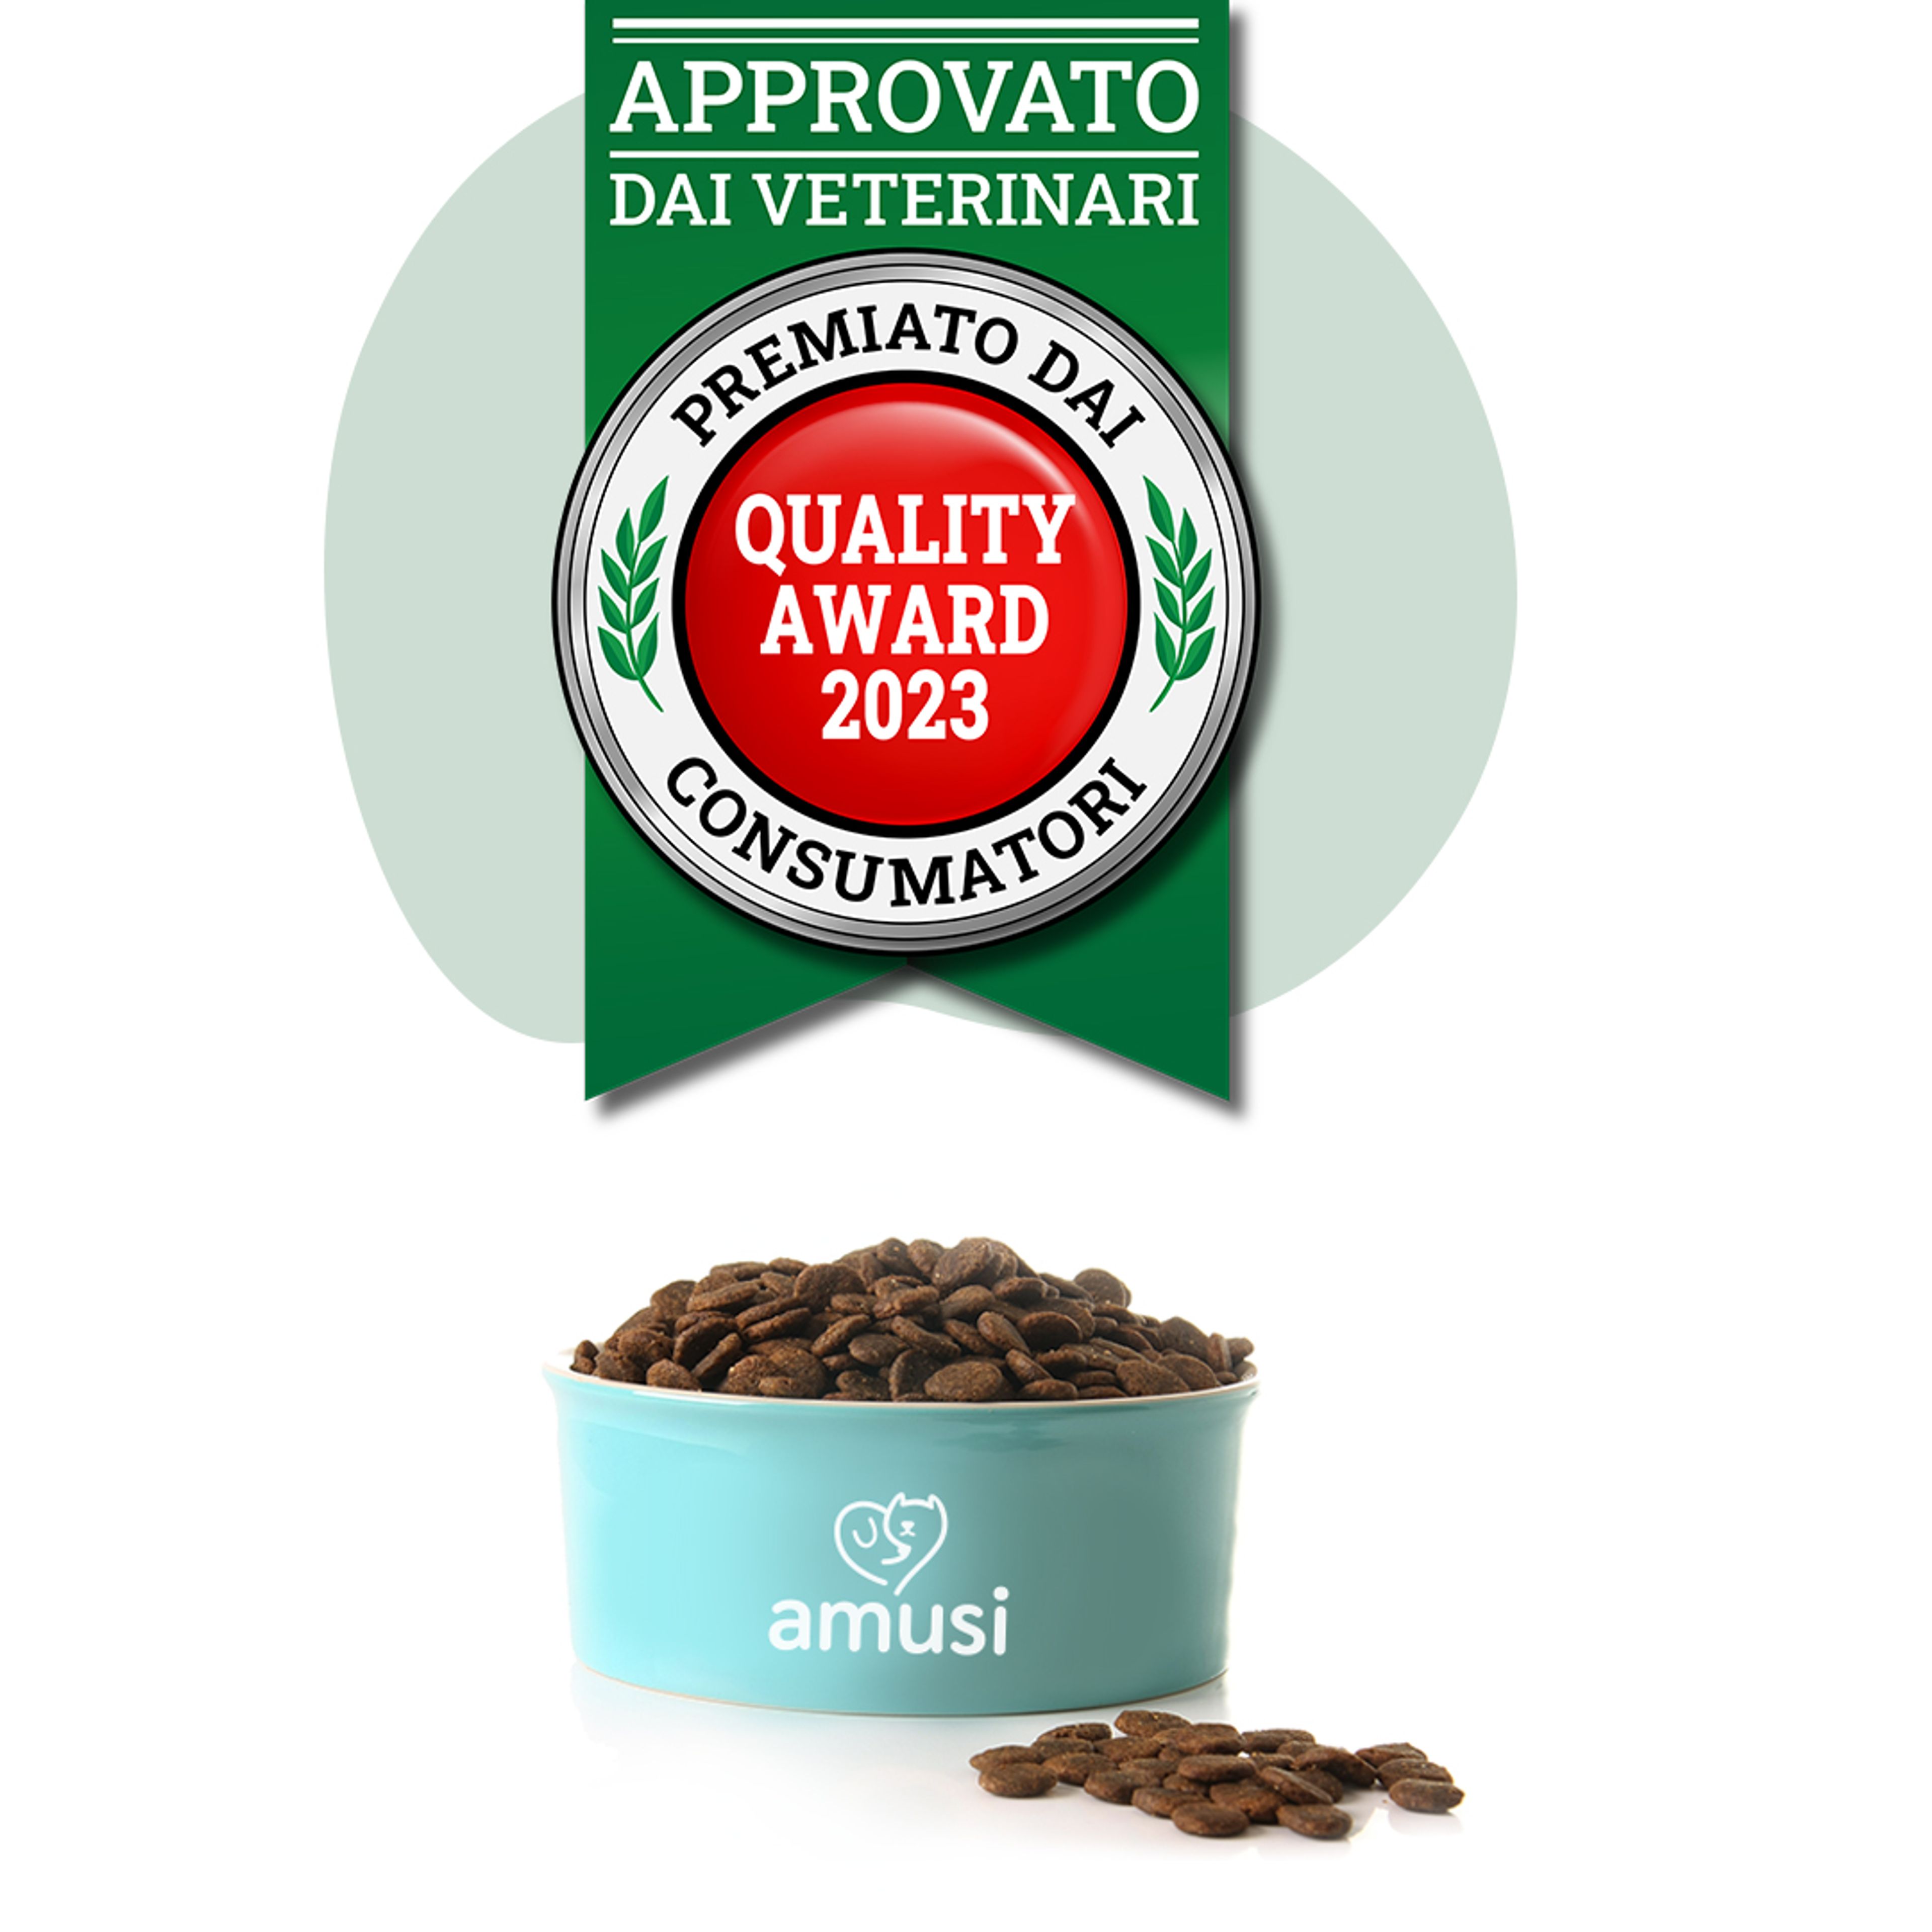 Premio Quality Award 2023. Amusi è approvato dai veterinari.